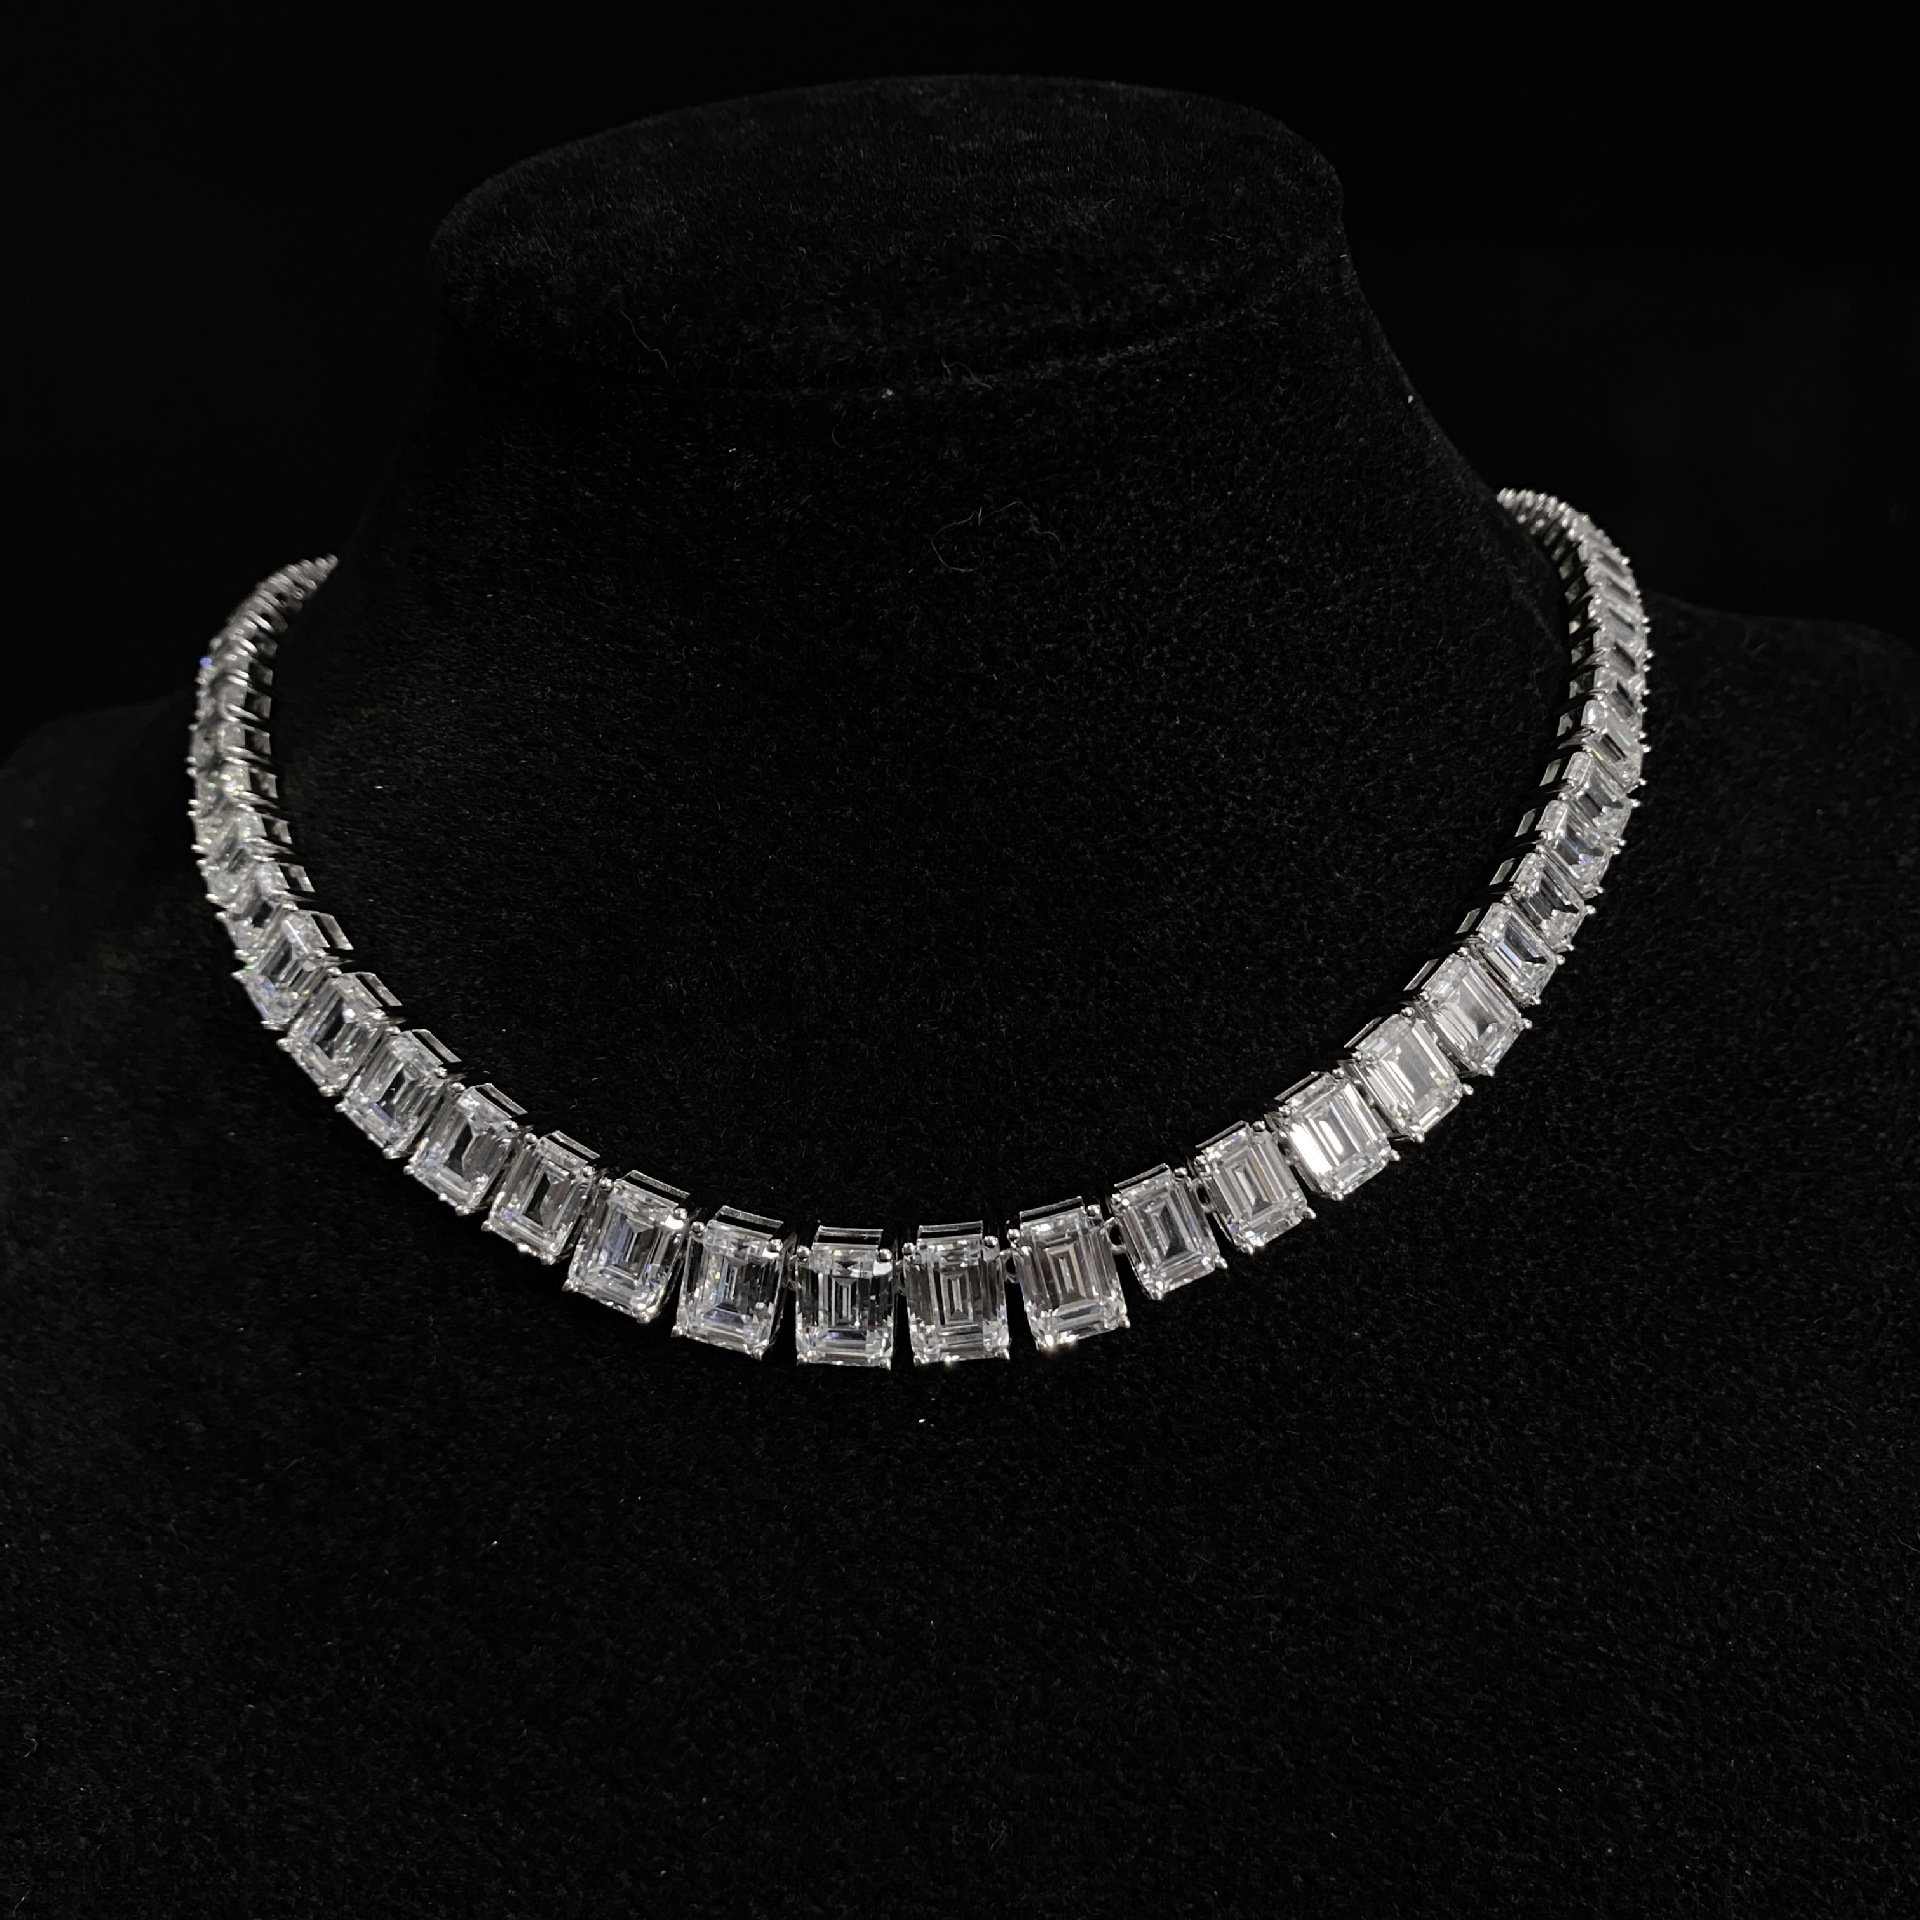 Emerald Cut Diamond Necklace - HERS